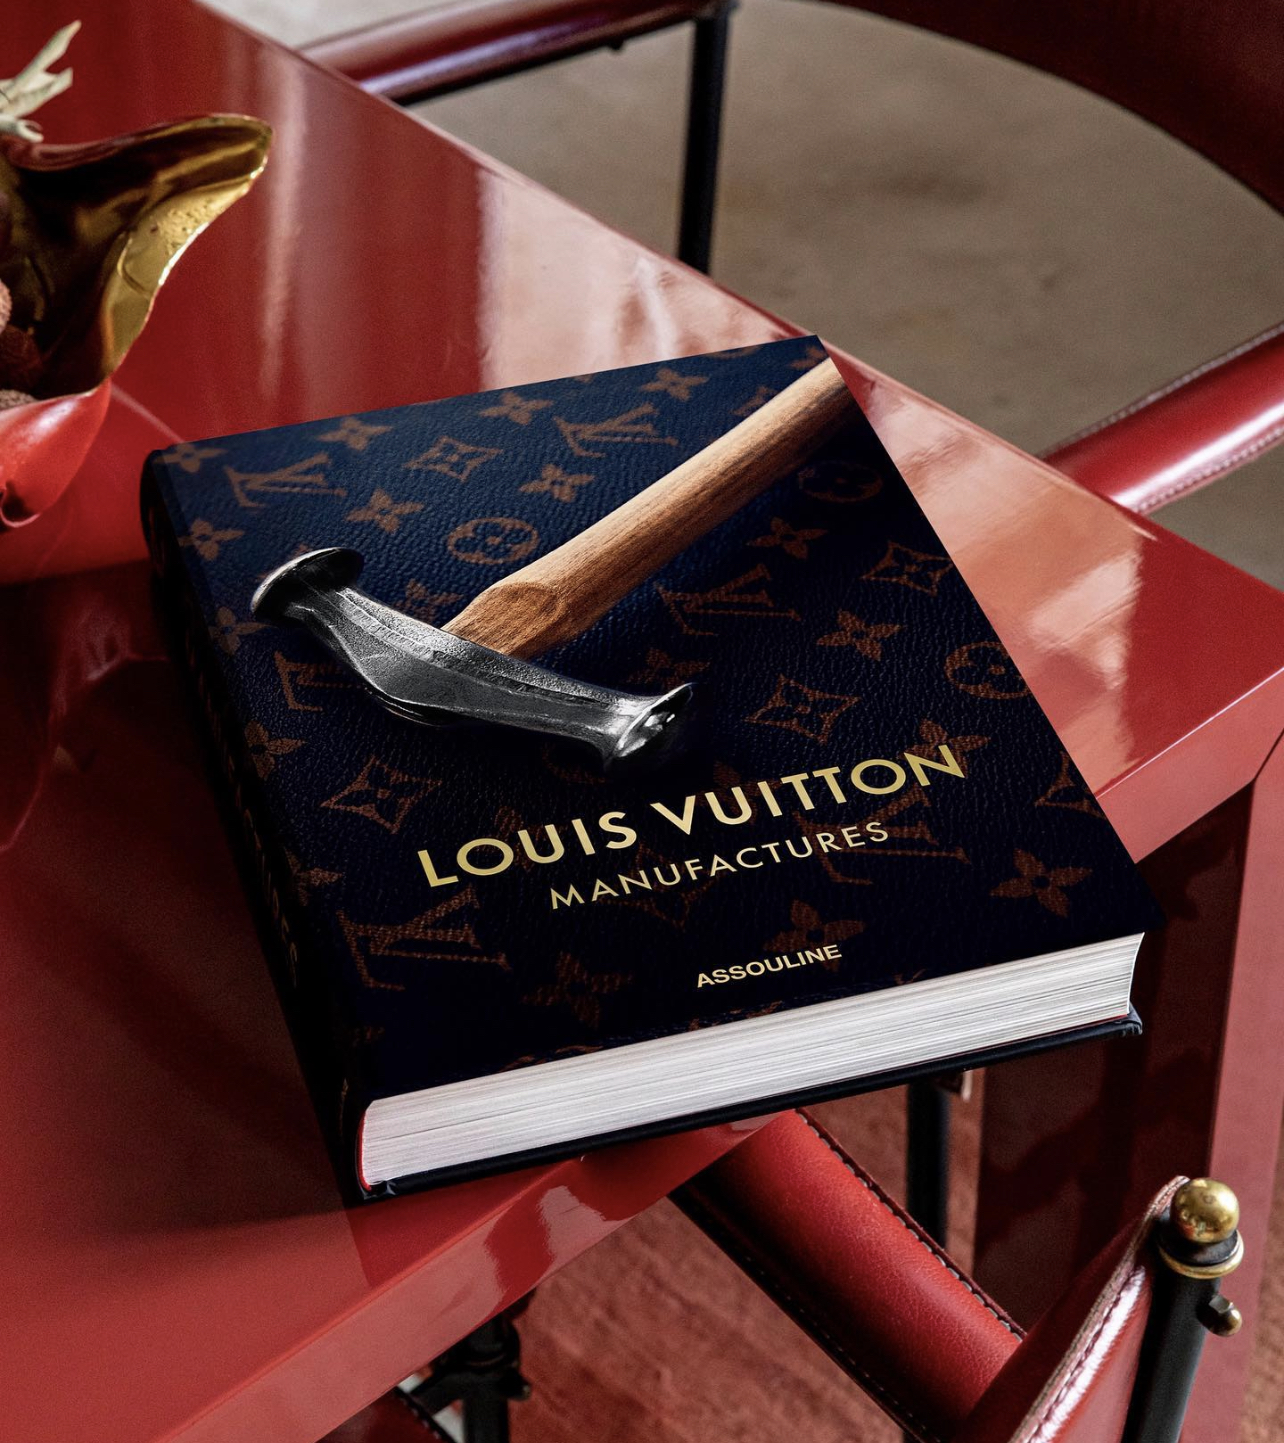 Con carteles de libros y películas: así ha presentado Louis Vuitton su  colección pre-fall 2020